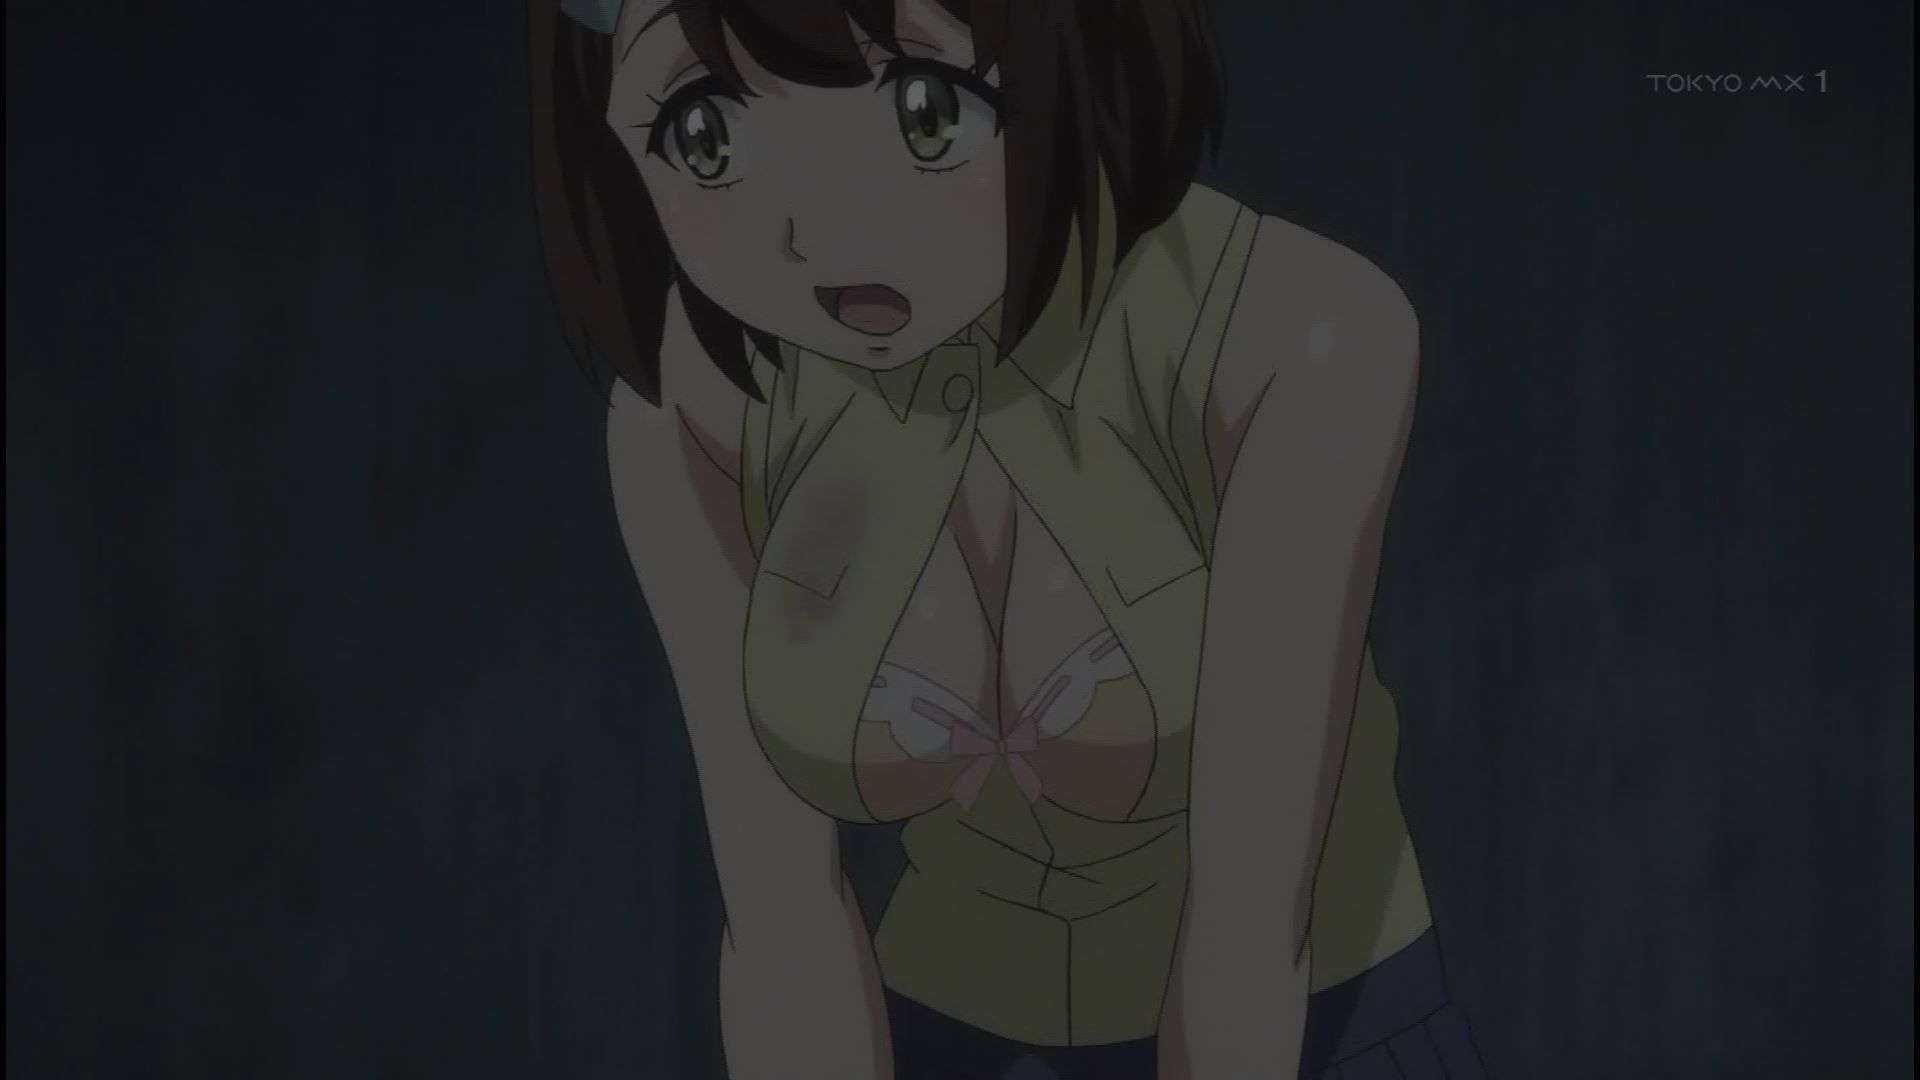 Anime [Kandagawa JETGIRLS] 8 episodes of girls erotic round-view bath bathing scene! 4